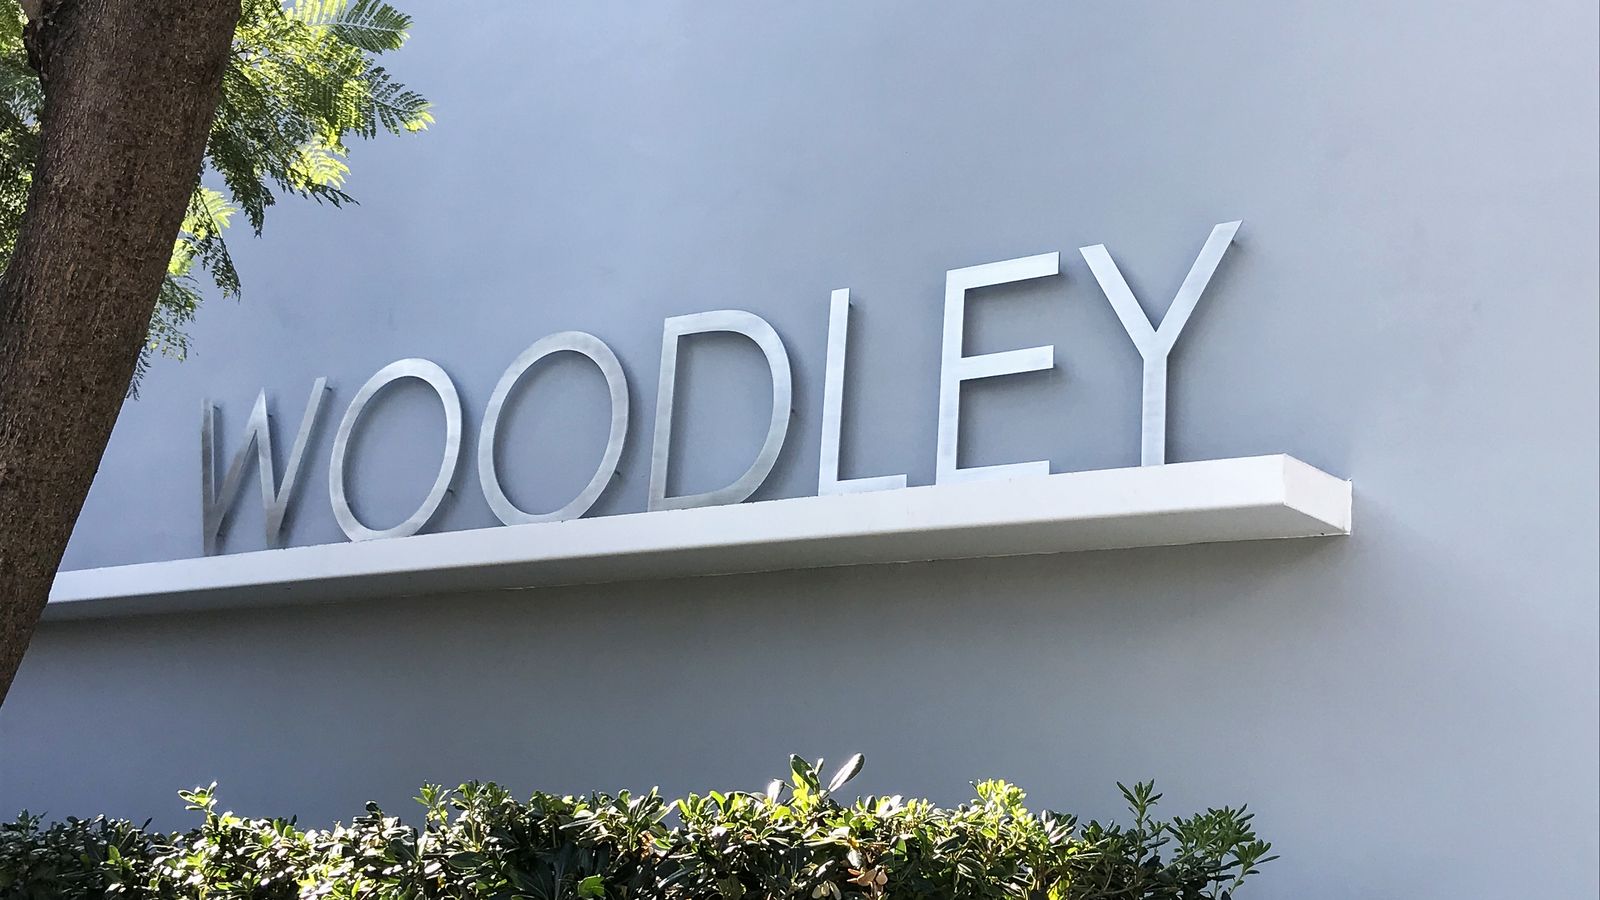 Woodley aluminum letters